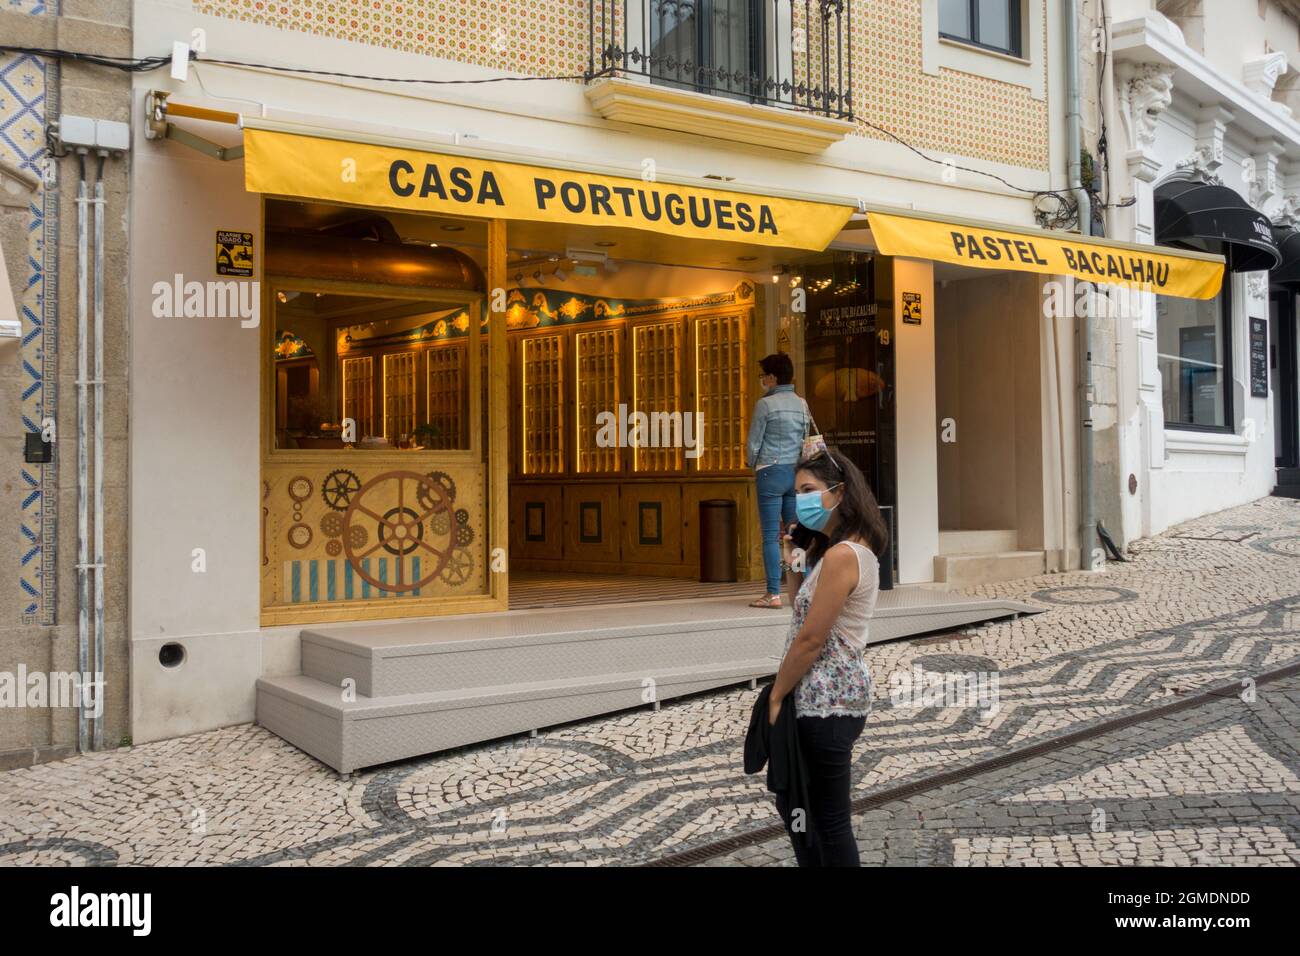 Casa Portuguesa do pastel de Bacalhau , Aveiro, Portugal Banque D'Images